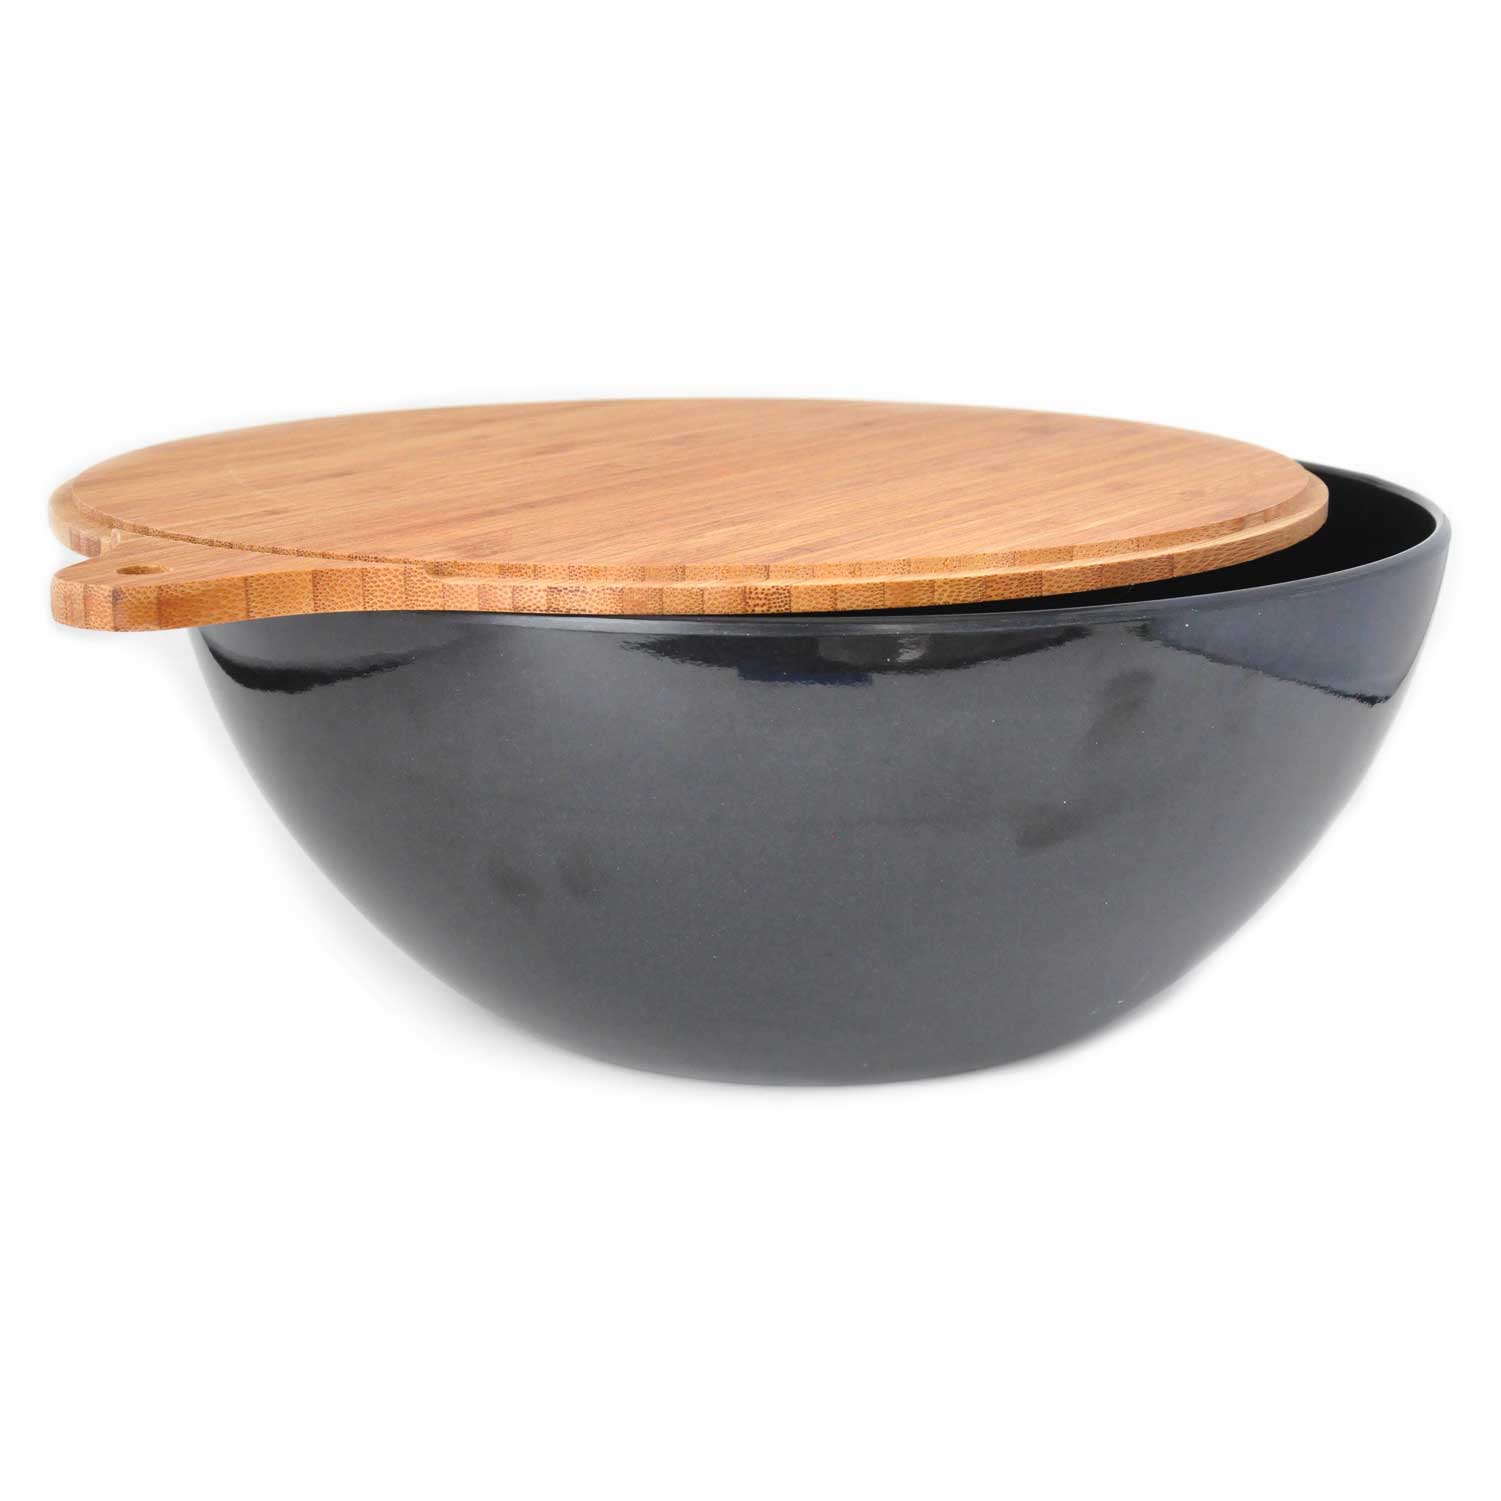 yumi-454-nature-black-natural-bamboo-salad-bowl-with-cover.jpg